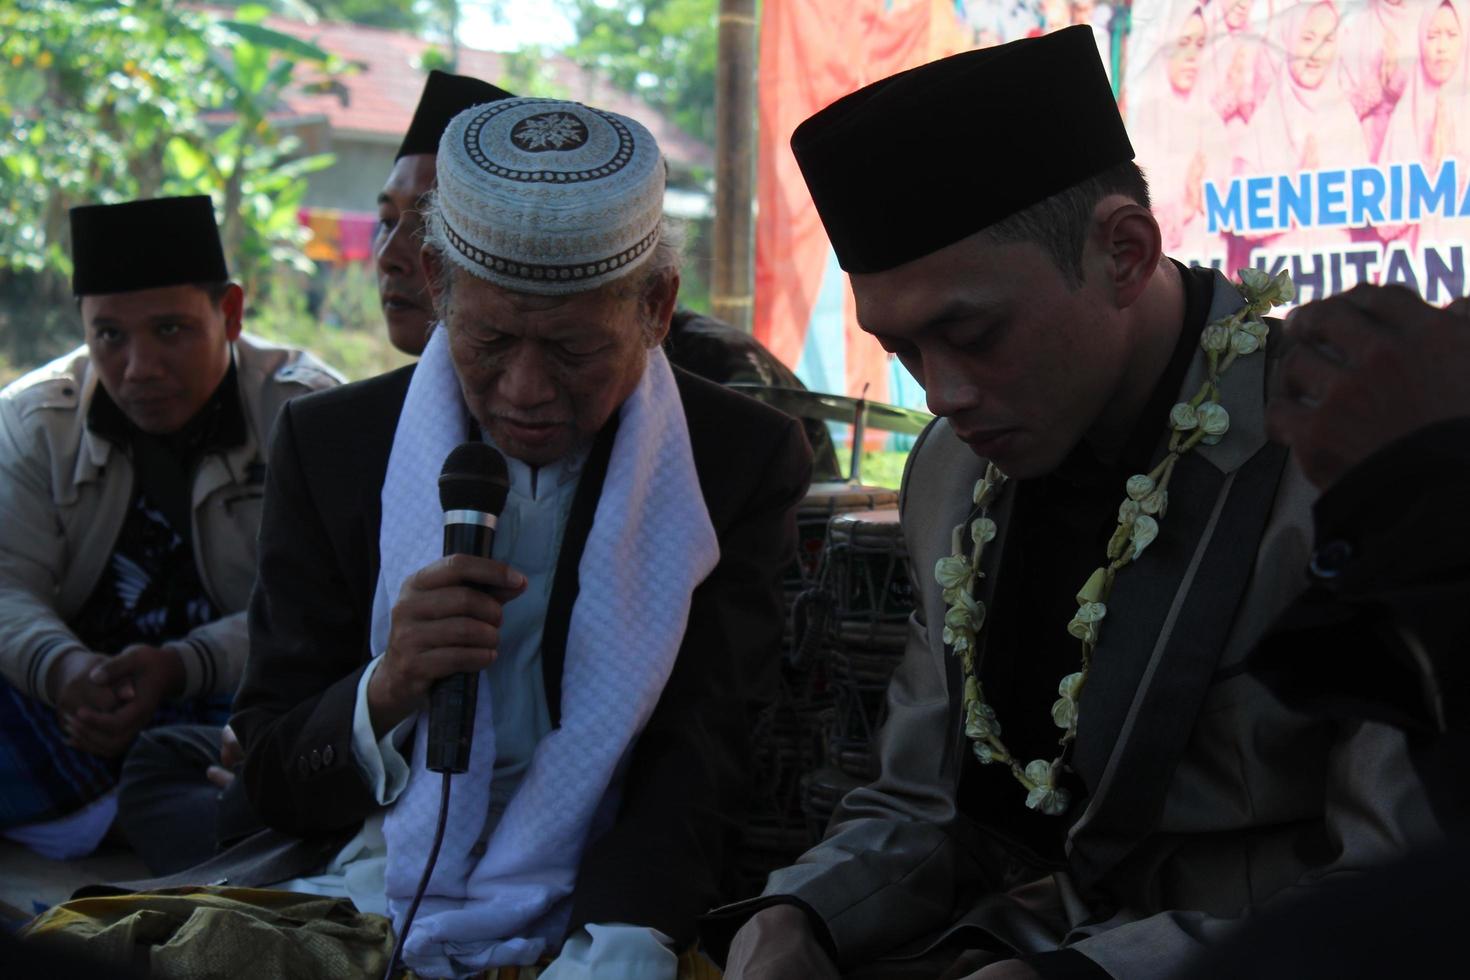 12 de junho de 2021 no distrito de Cianjur, West Java, Indonésia. um velho está aconselhando o noivo antes do casamento. costumes e cultura do casamento muçulmano indonésio. foto